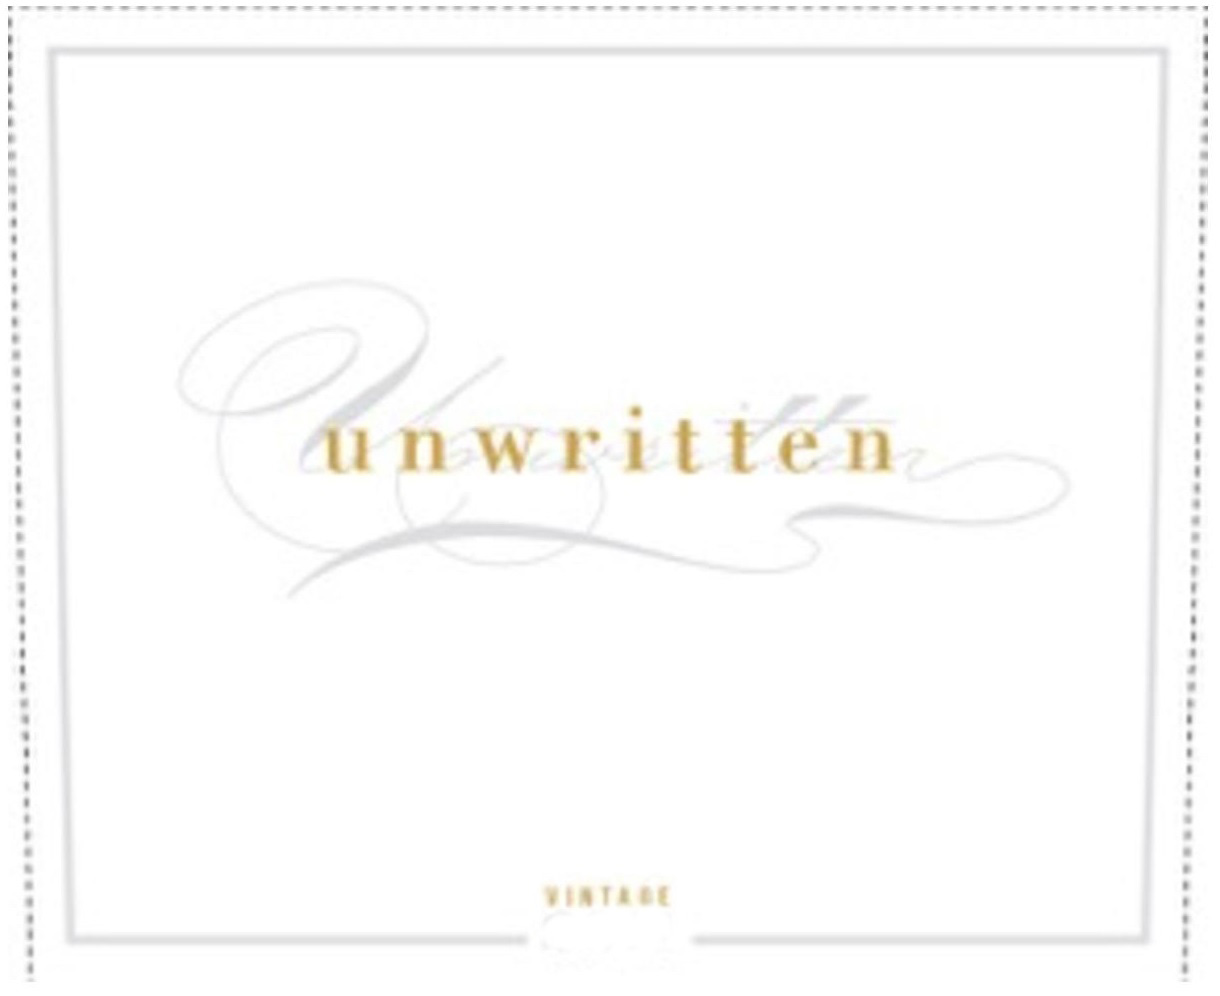 Unwritten - Cabernet Sauvignon label